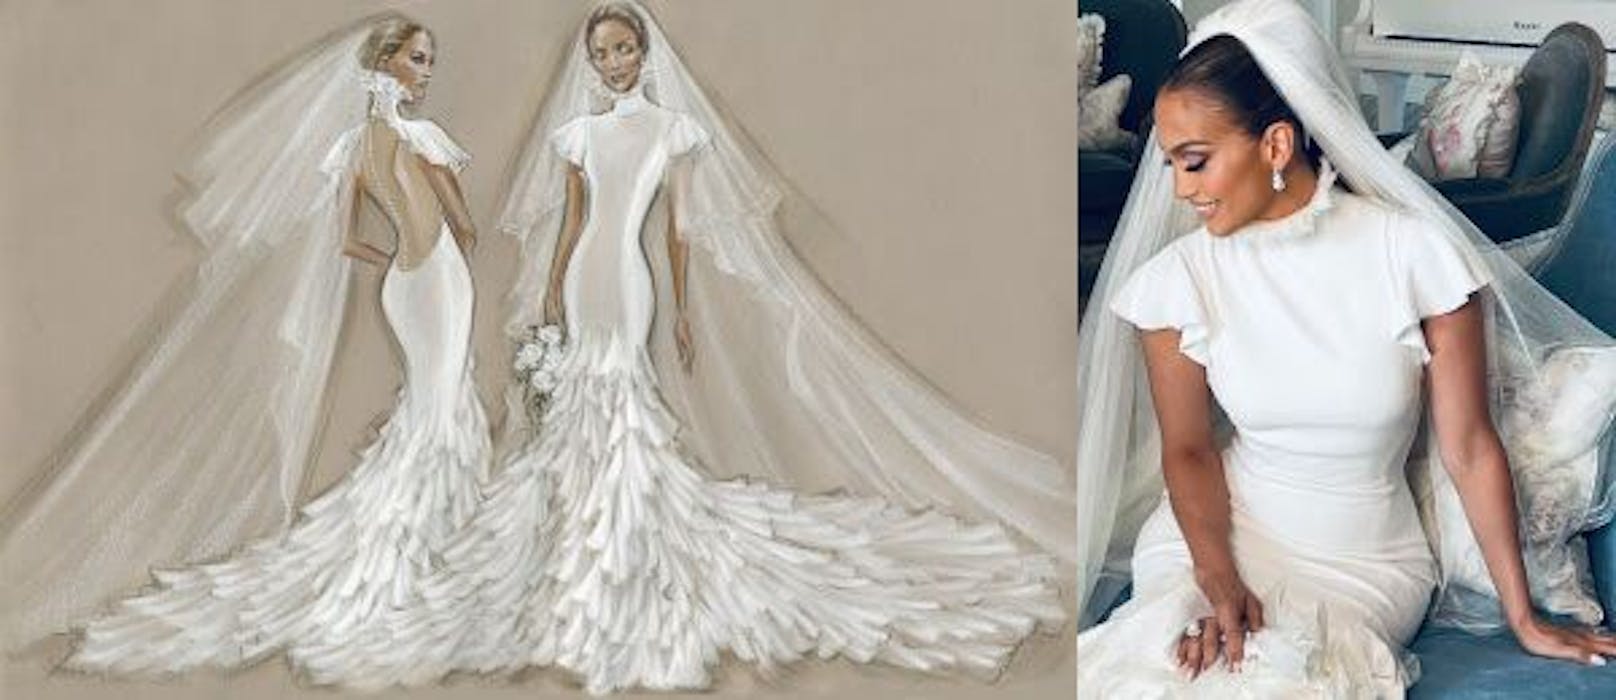 Drei Millionen – J. Lo enthüllt ihre Hochzeitskleider